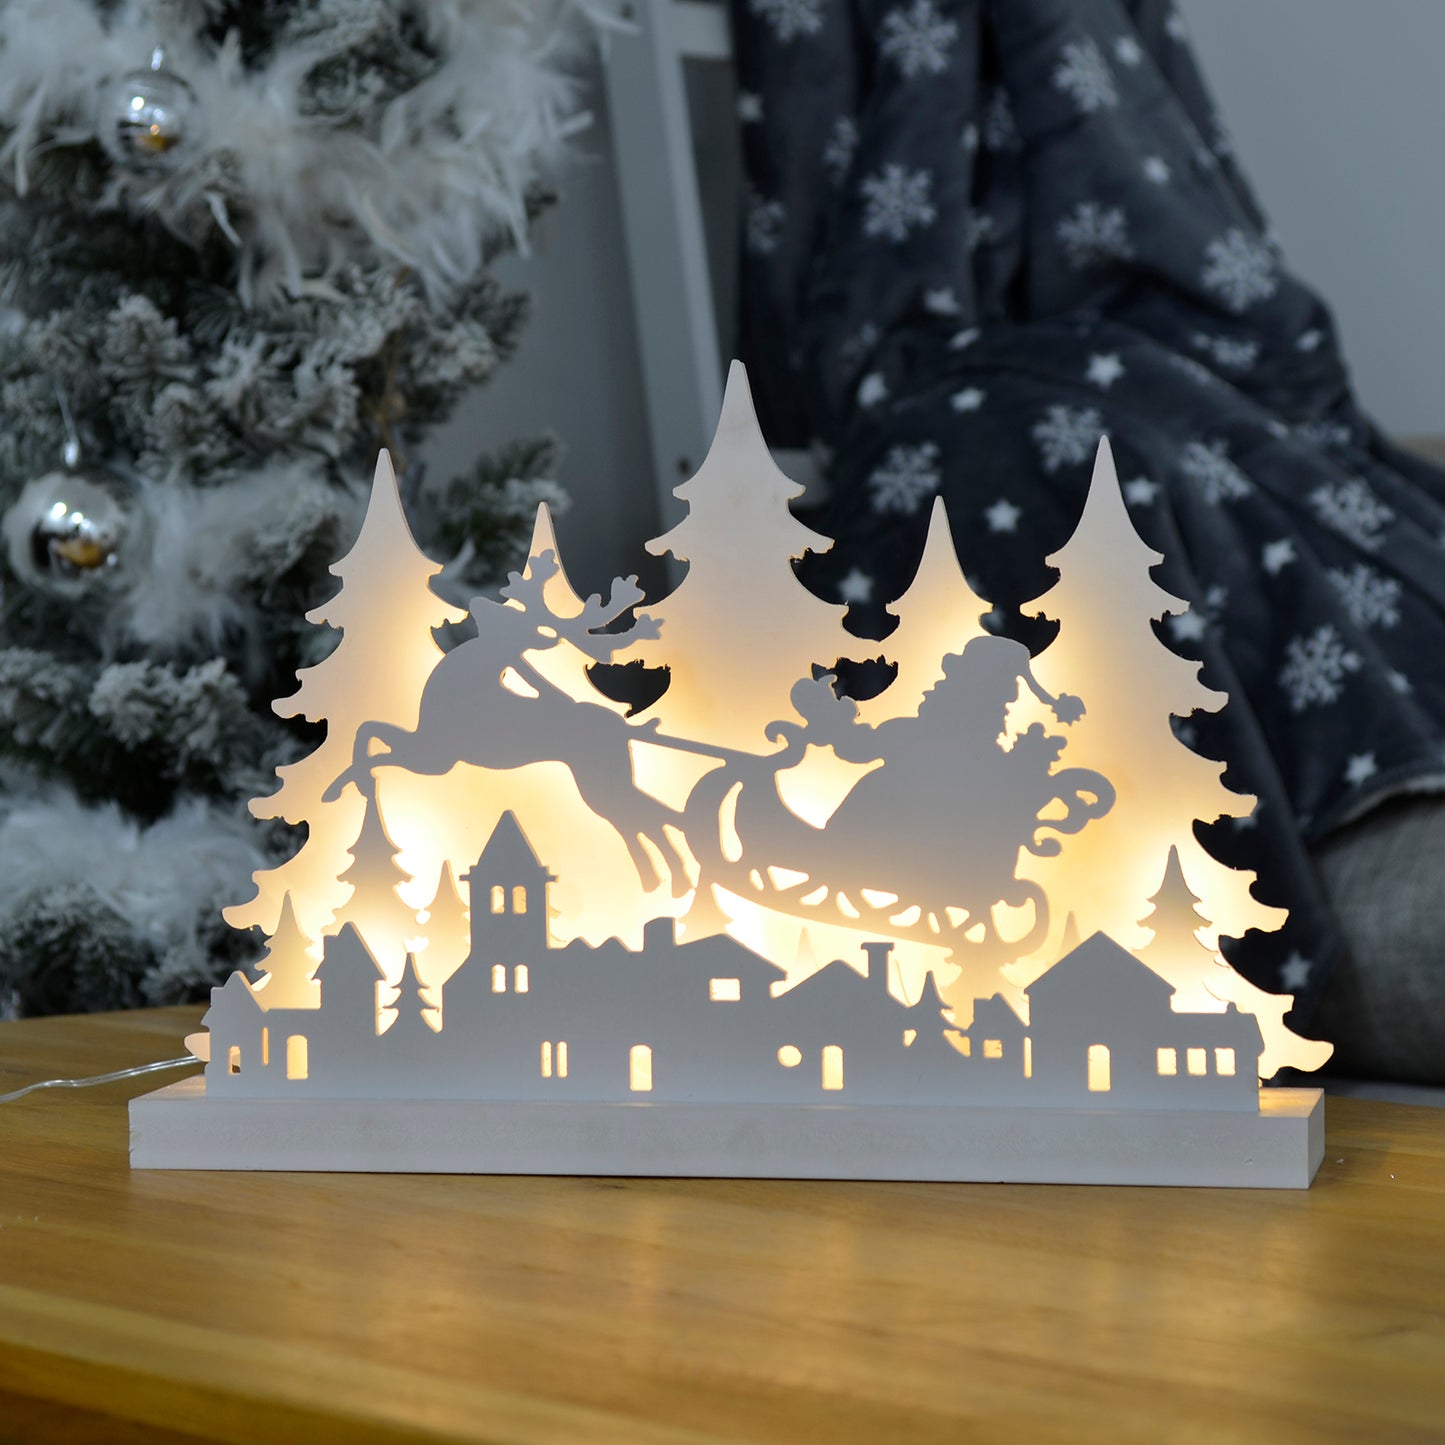 Mr Crimbo White Christmas Scene Light Up Ornament - MrCrimbo.co.uk -XS6516 - Sleigh -christmas room decor